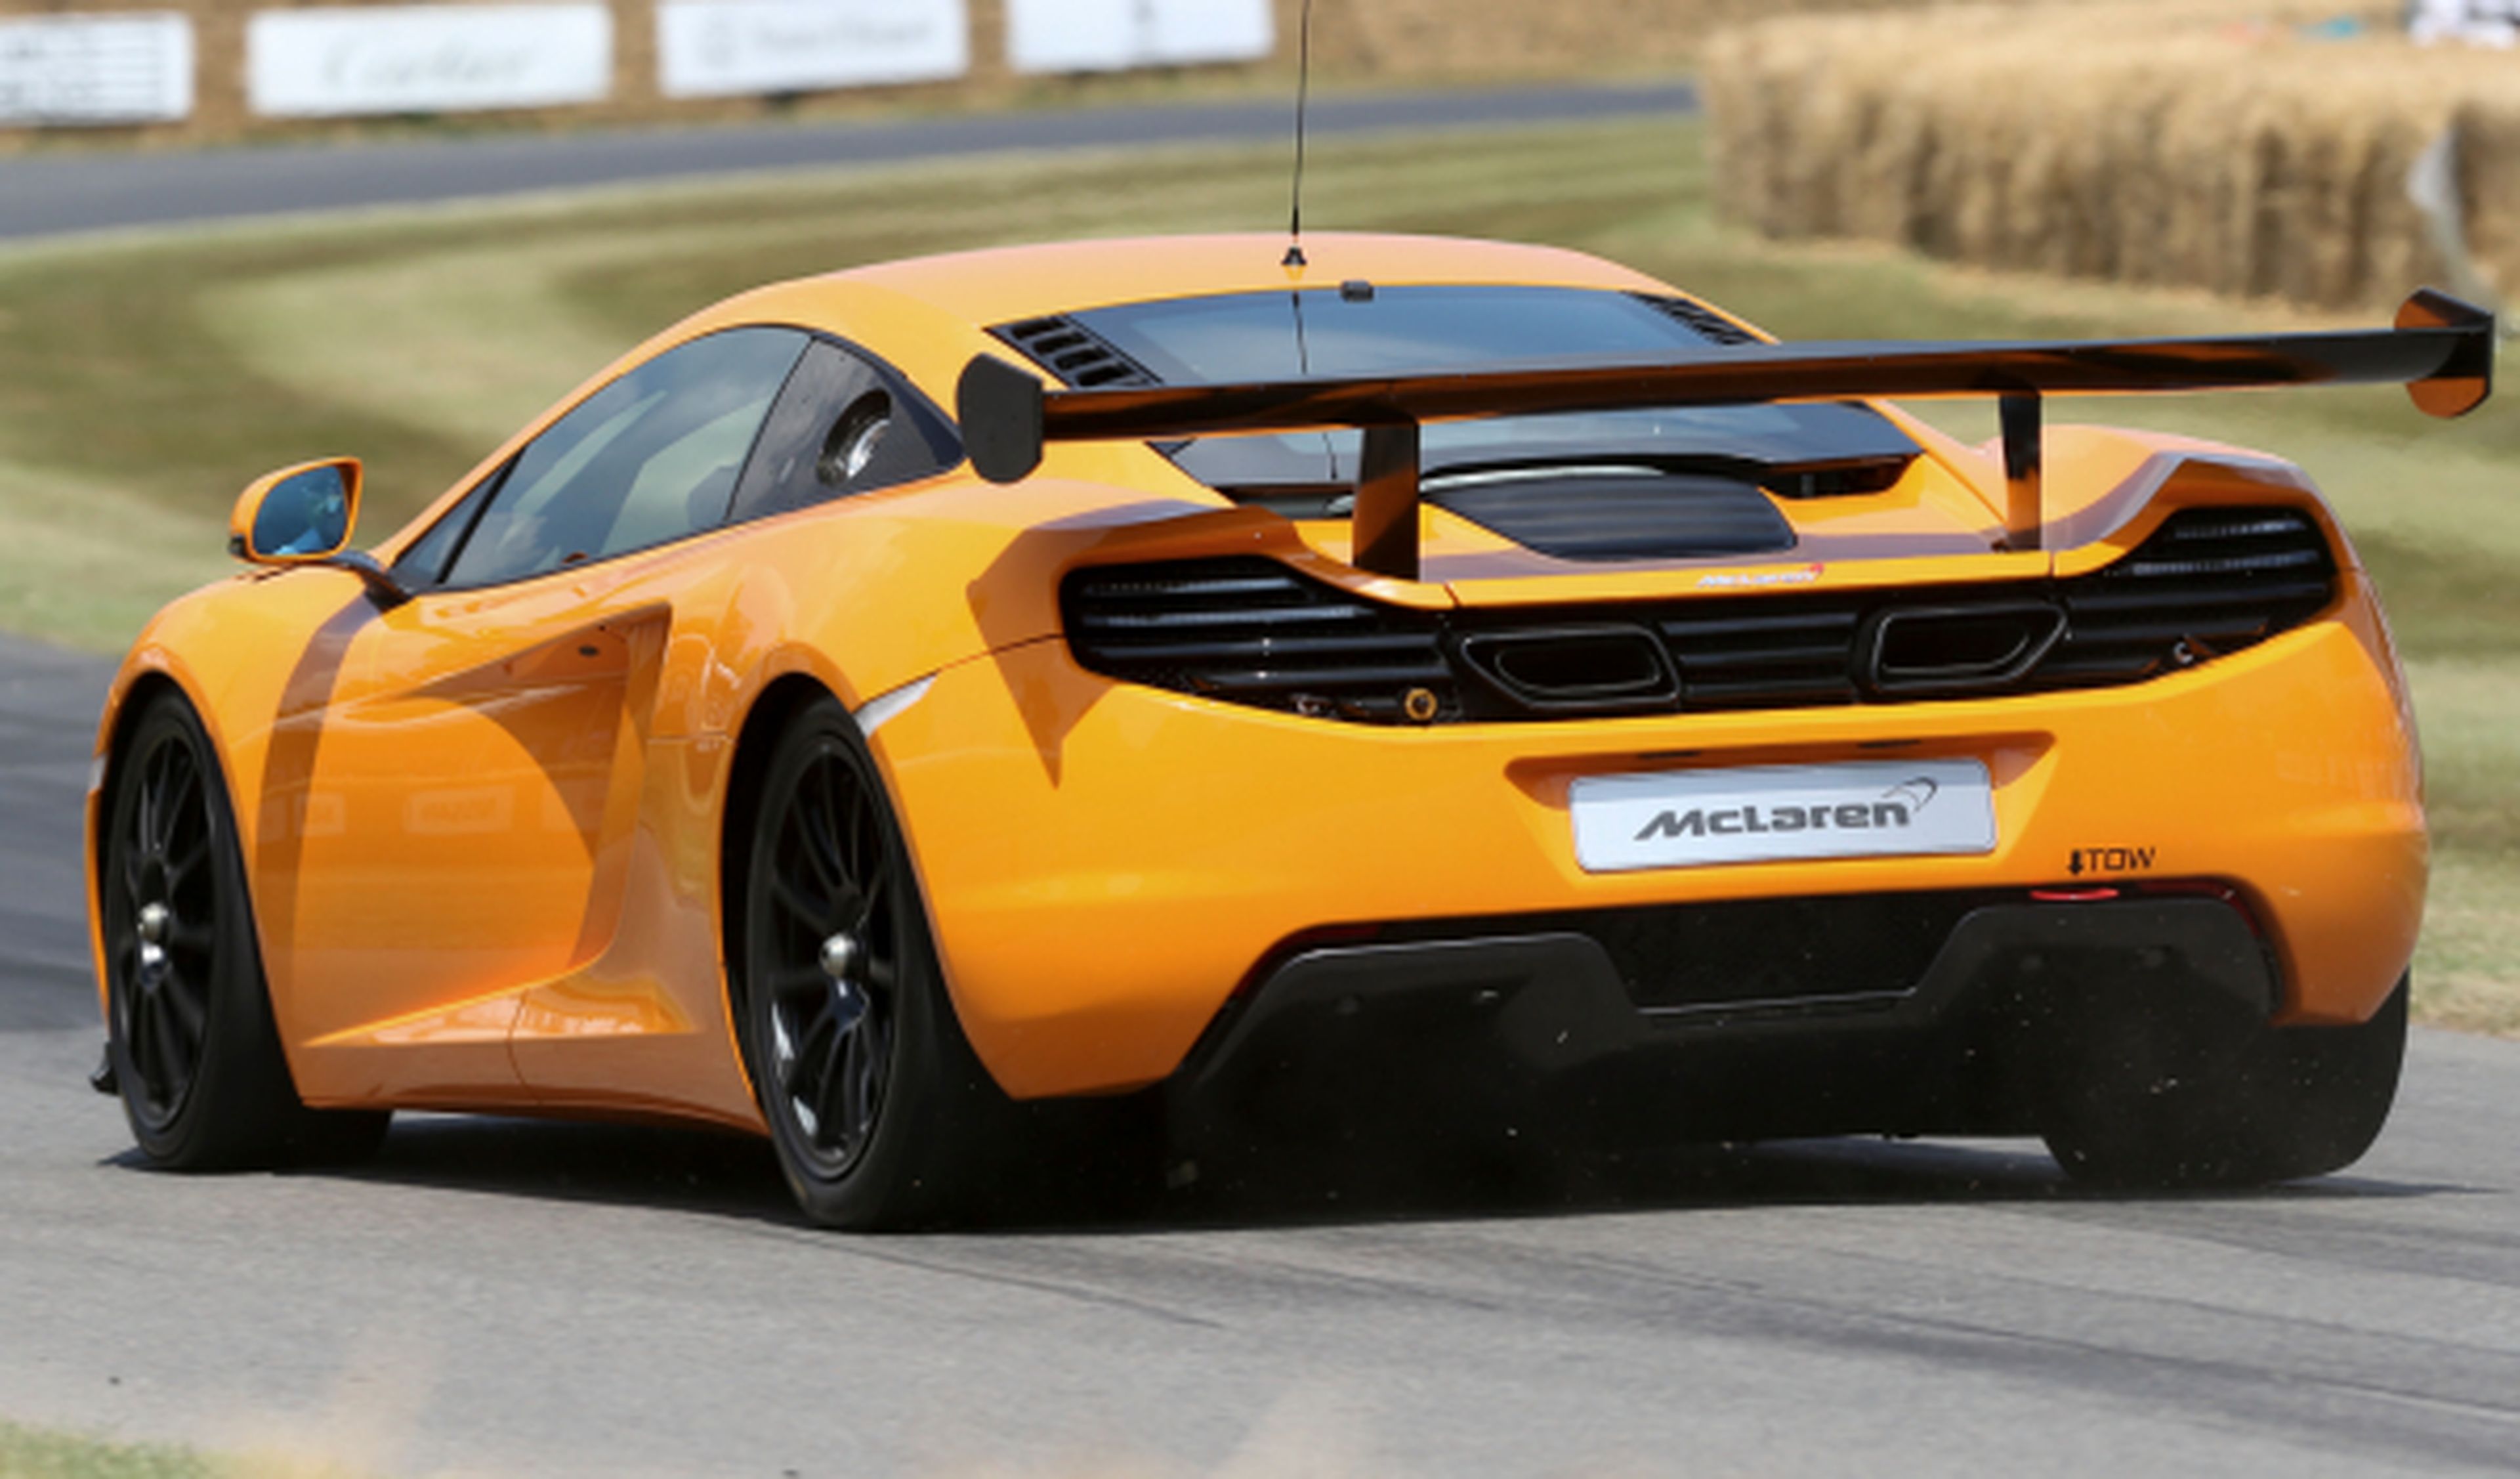 McLaren planea un 12C más potente rival de 458 Speciale